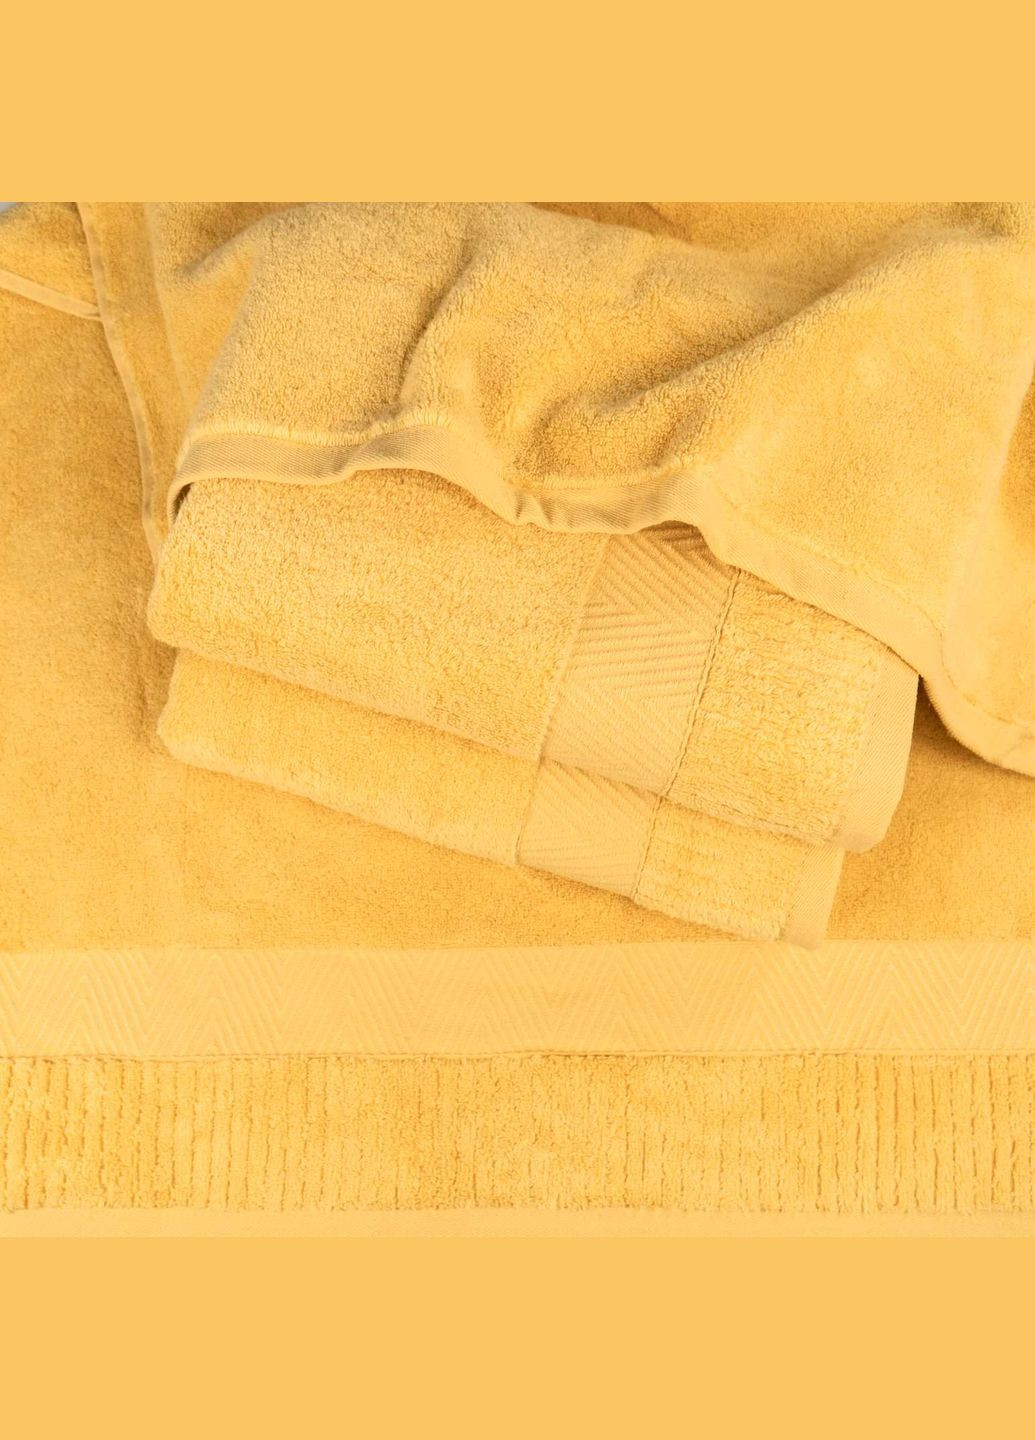 GM Textile великий банний махровий рушник 100x150см преміум якості зеро твіст бордюр 550г/м2 (жовтий) жовтий виробництво -